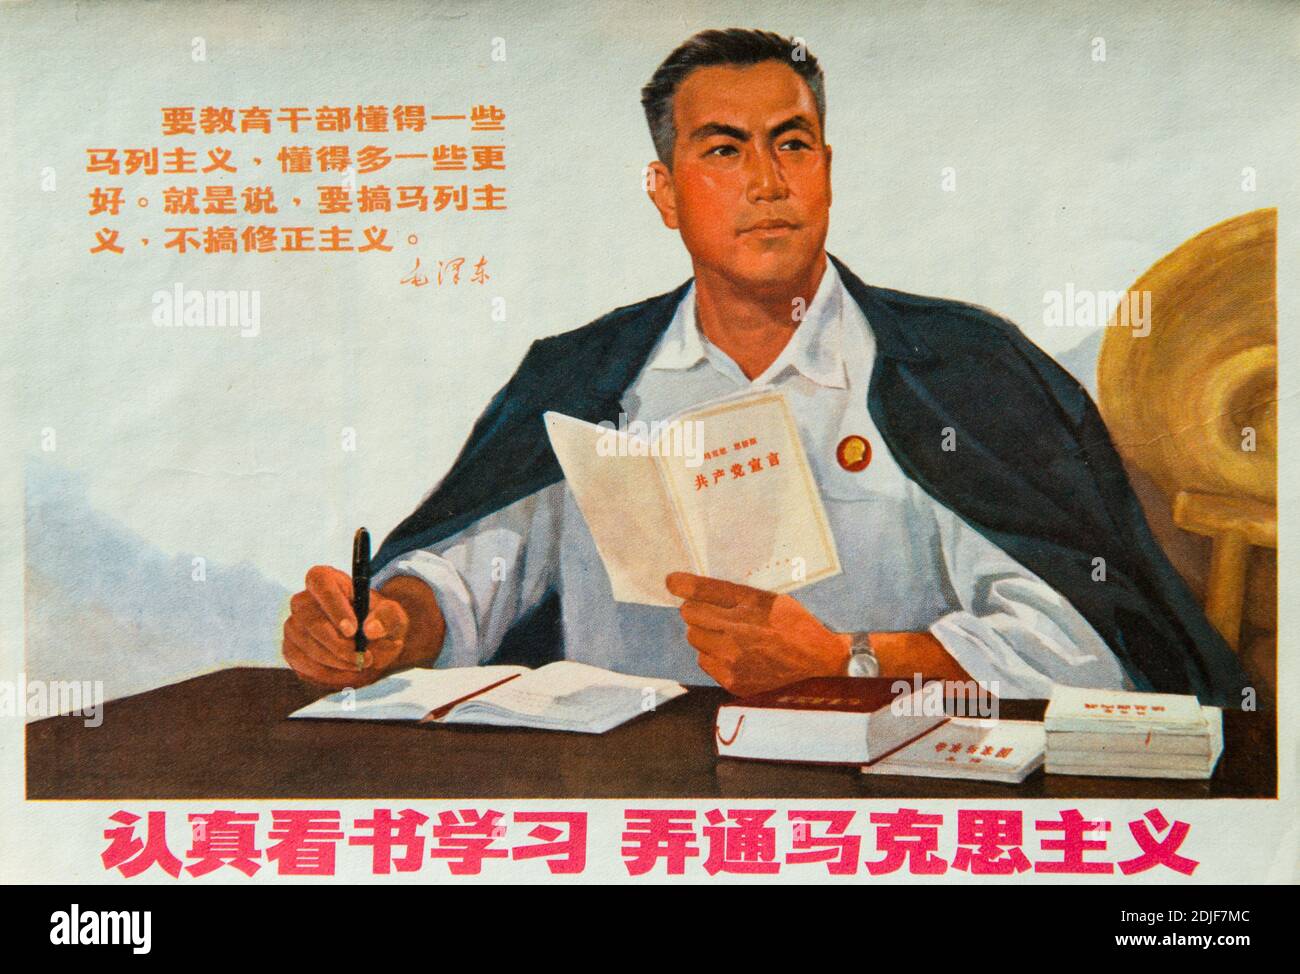 Ein echtes Propagandaplakat während der Kulturrevolution in China. Die chinesischen Schriftzeichen lesen: Lesen und studieren Sie sorgfältig, um den Marxismus zu verstehen. Stockfoto